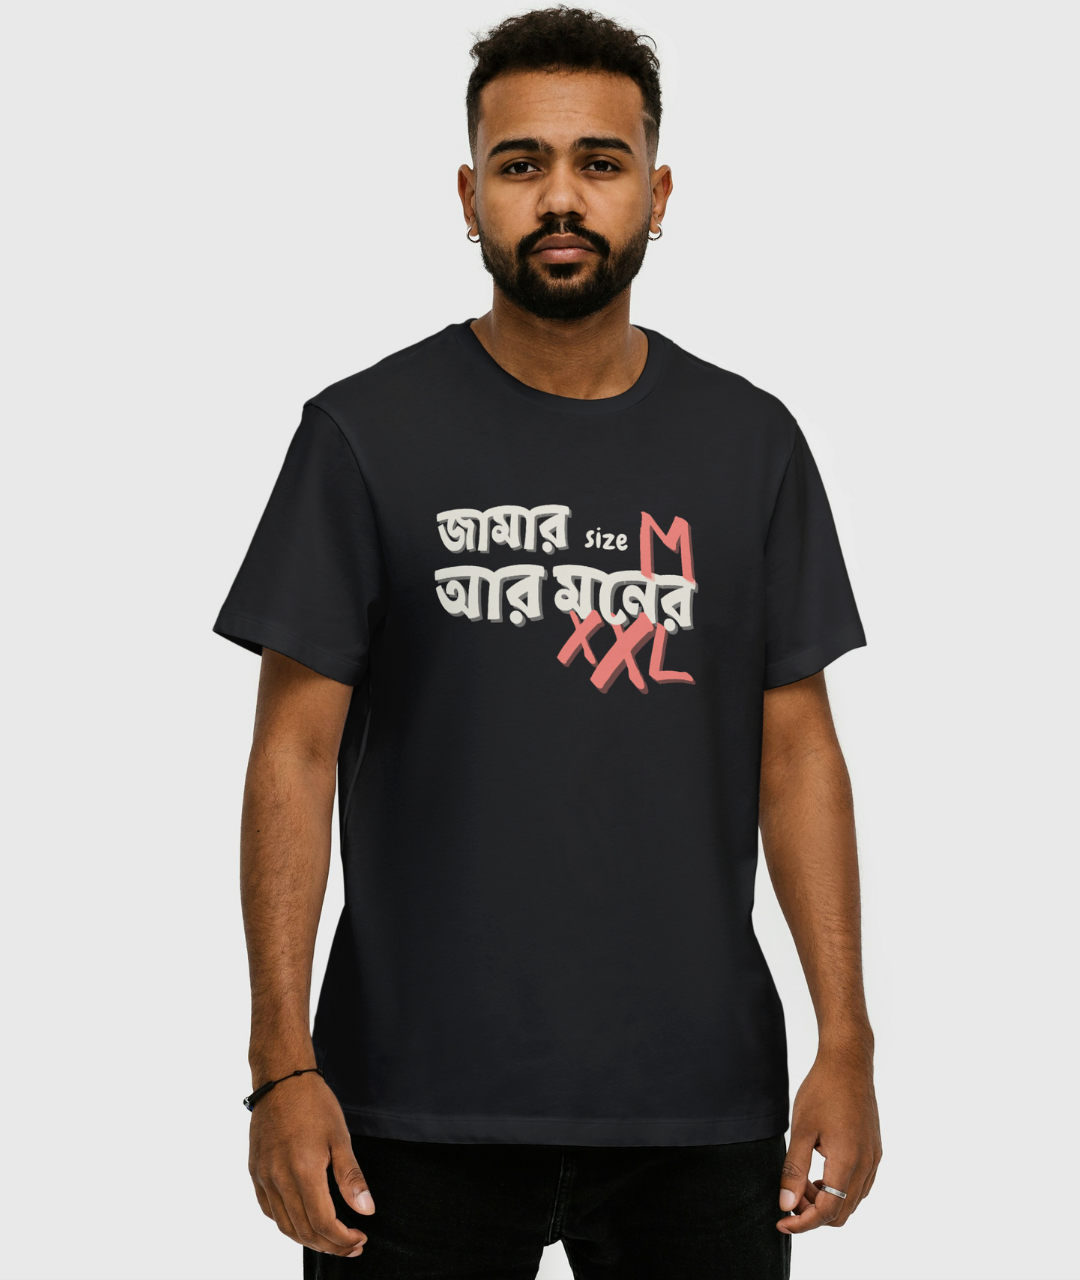 Jamar Size M aar Moner XXL Unisex Regular Fit T-shirt